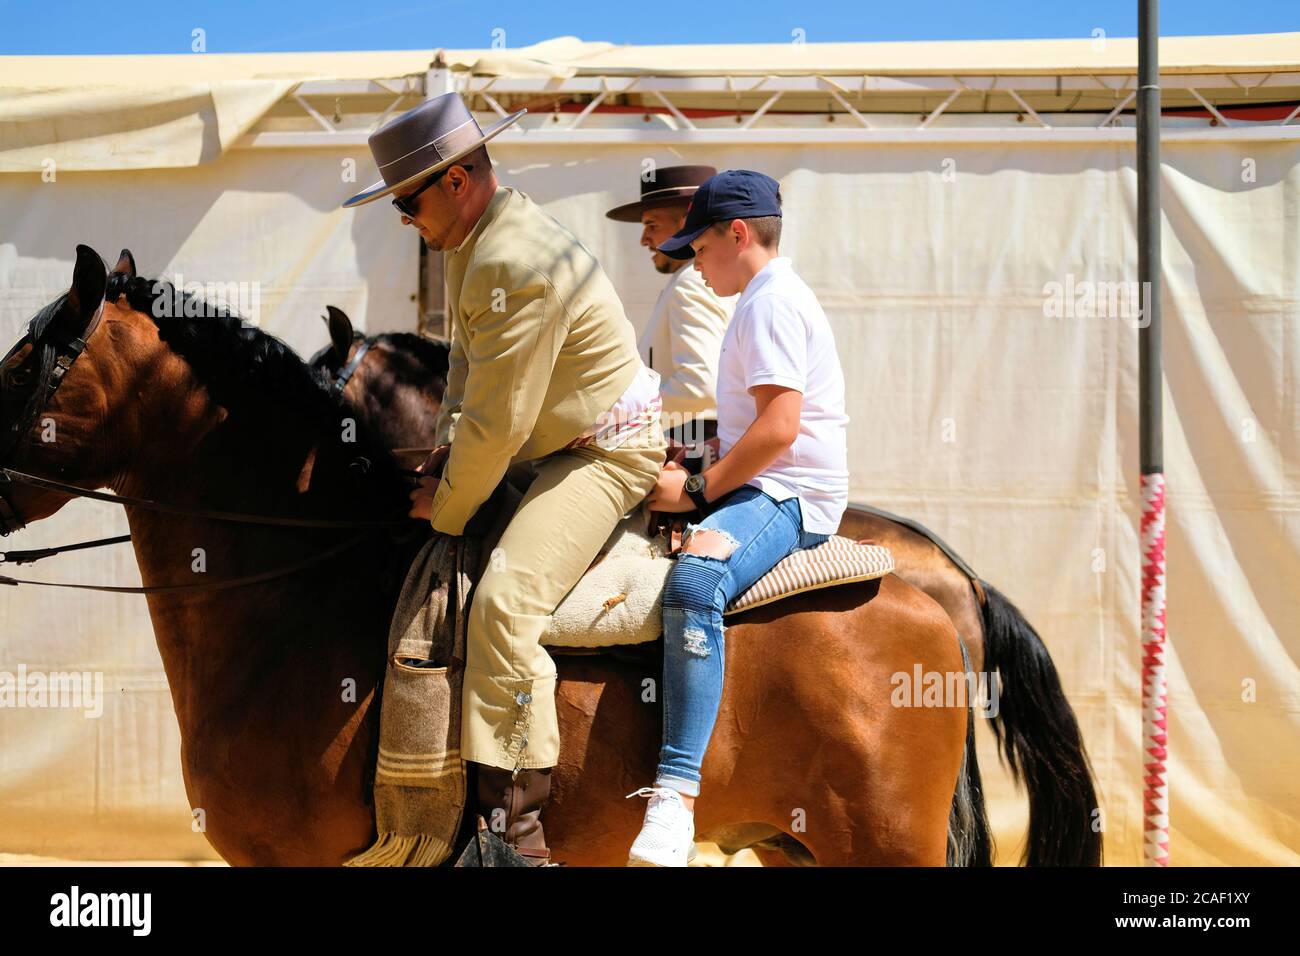 Père et fils à cheval dans une guirlande espagnole traditionnelle lors de la fête de la Feria del Corpus en 2019 ou de la foire de Corpus Christi à Grenade, en Espagne. Banque D'Images